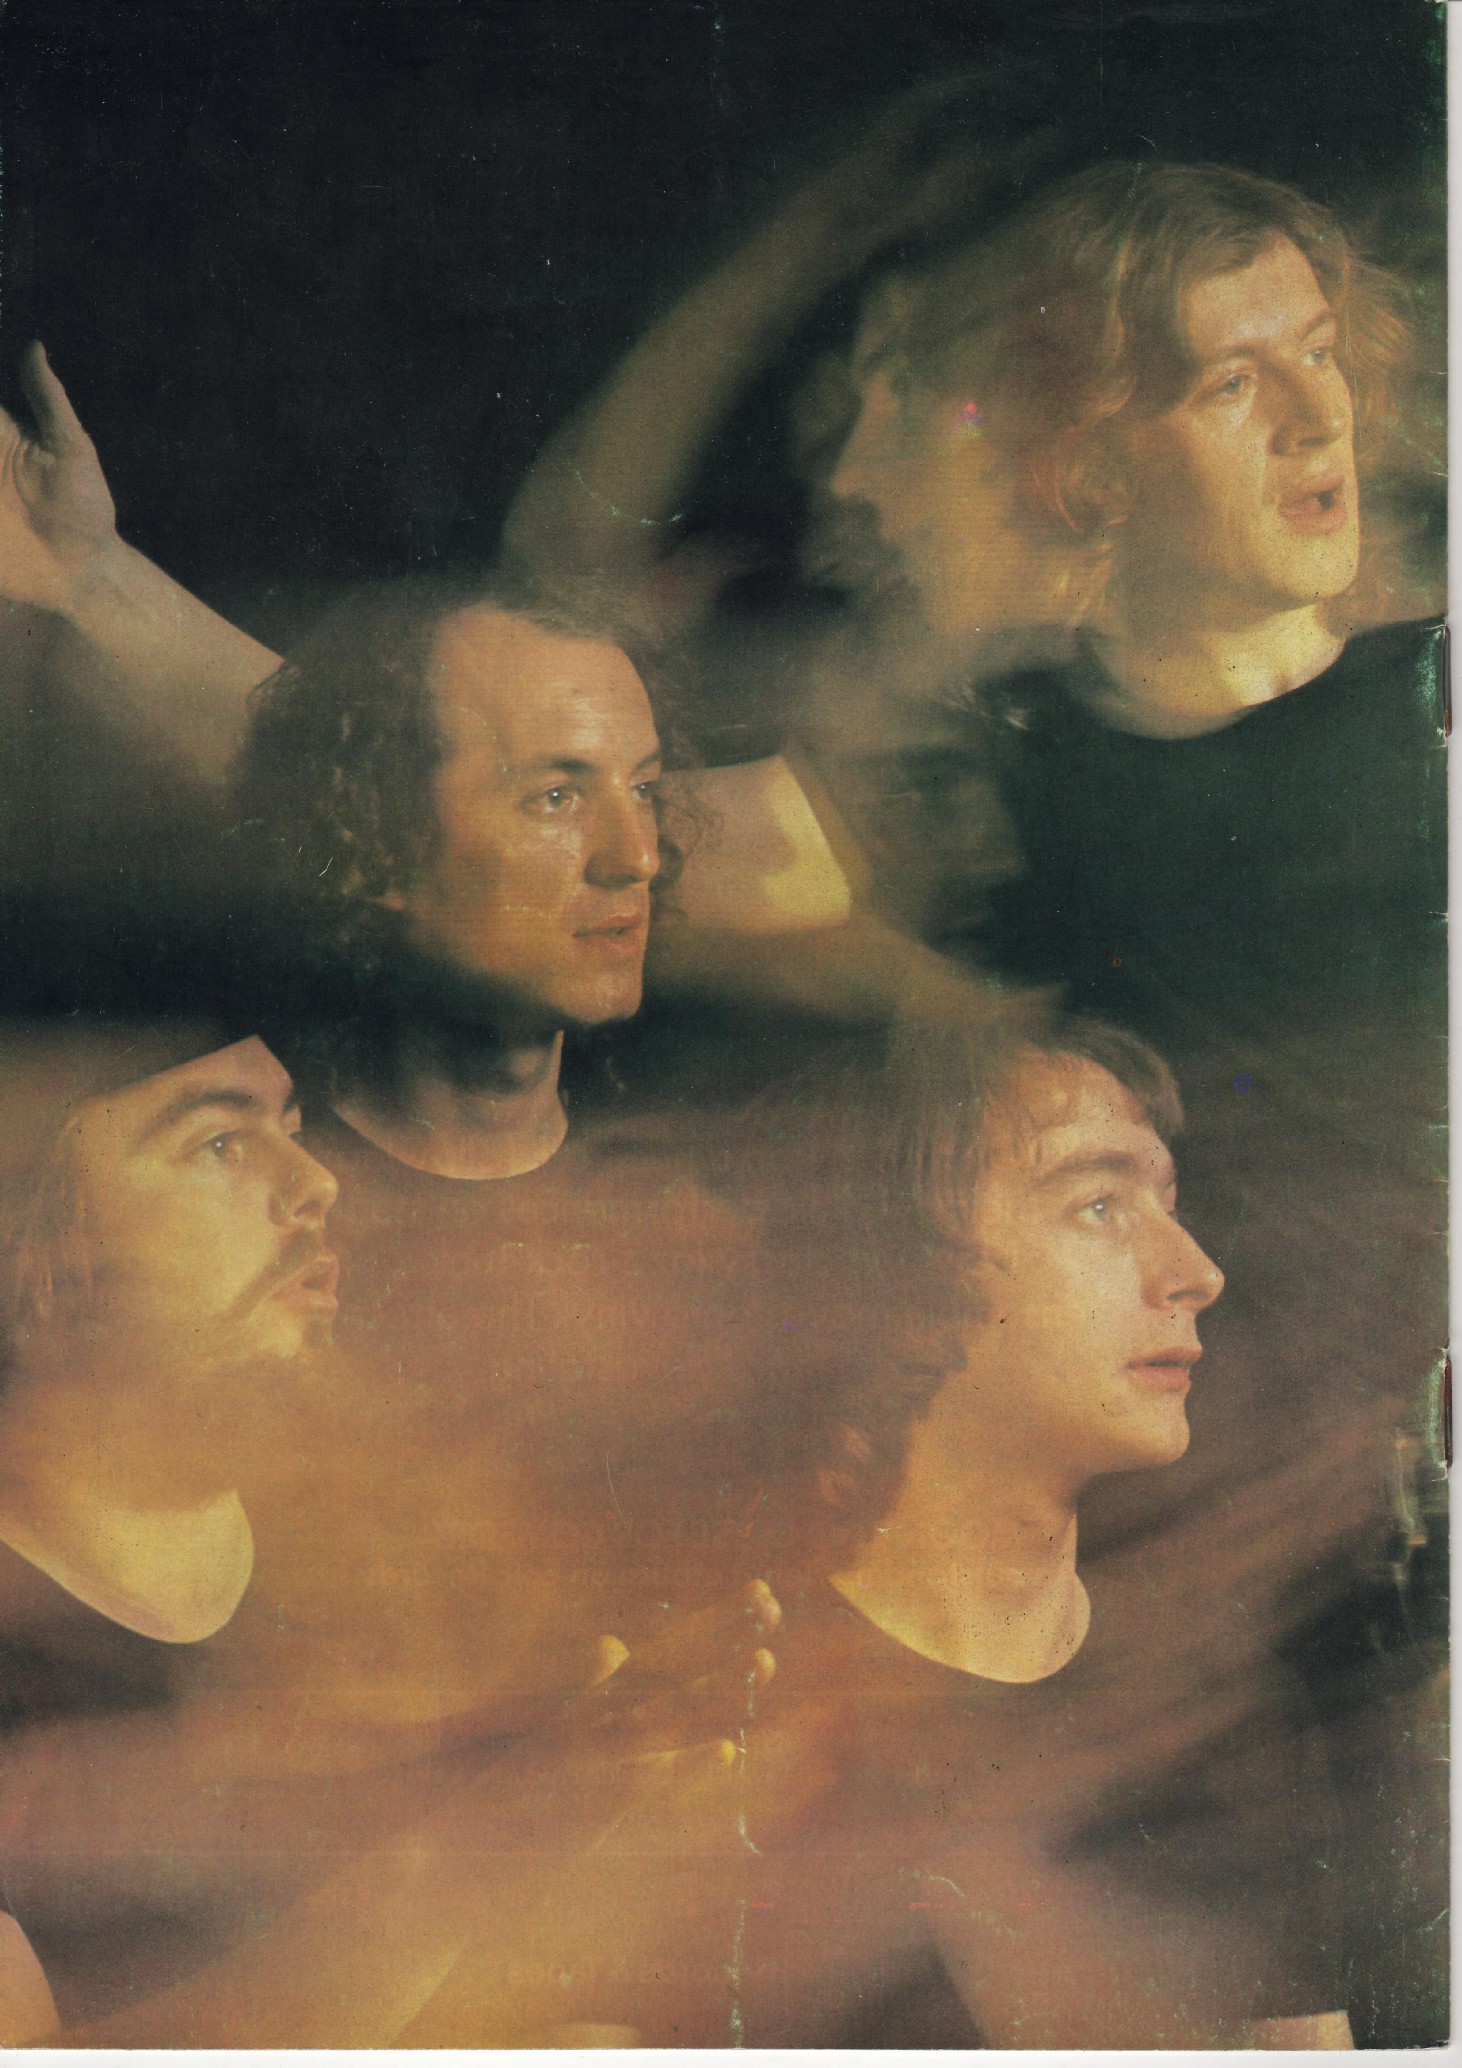 Iain, Willie, Gavin & Tim on Slipstream cover.